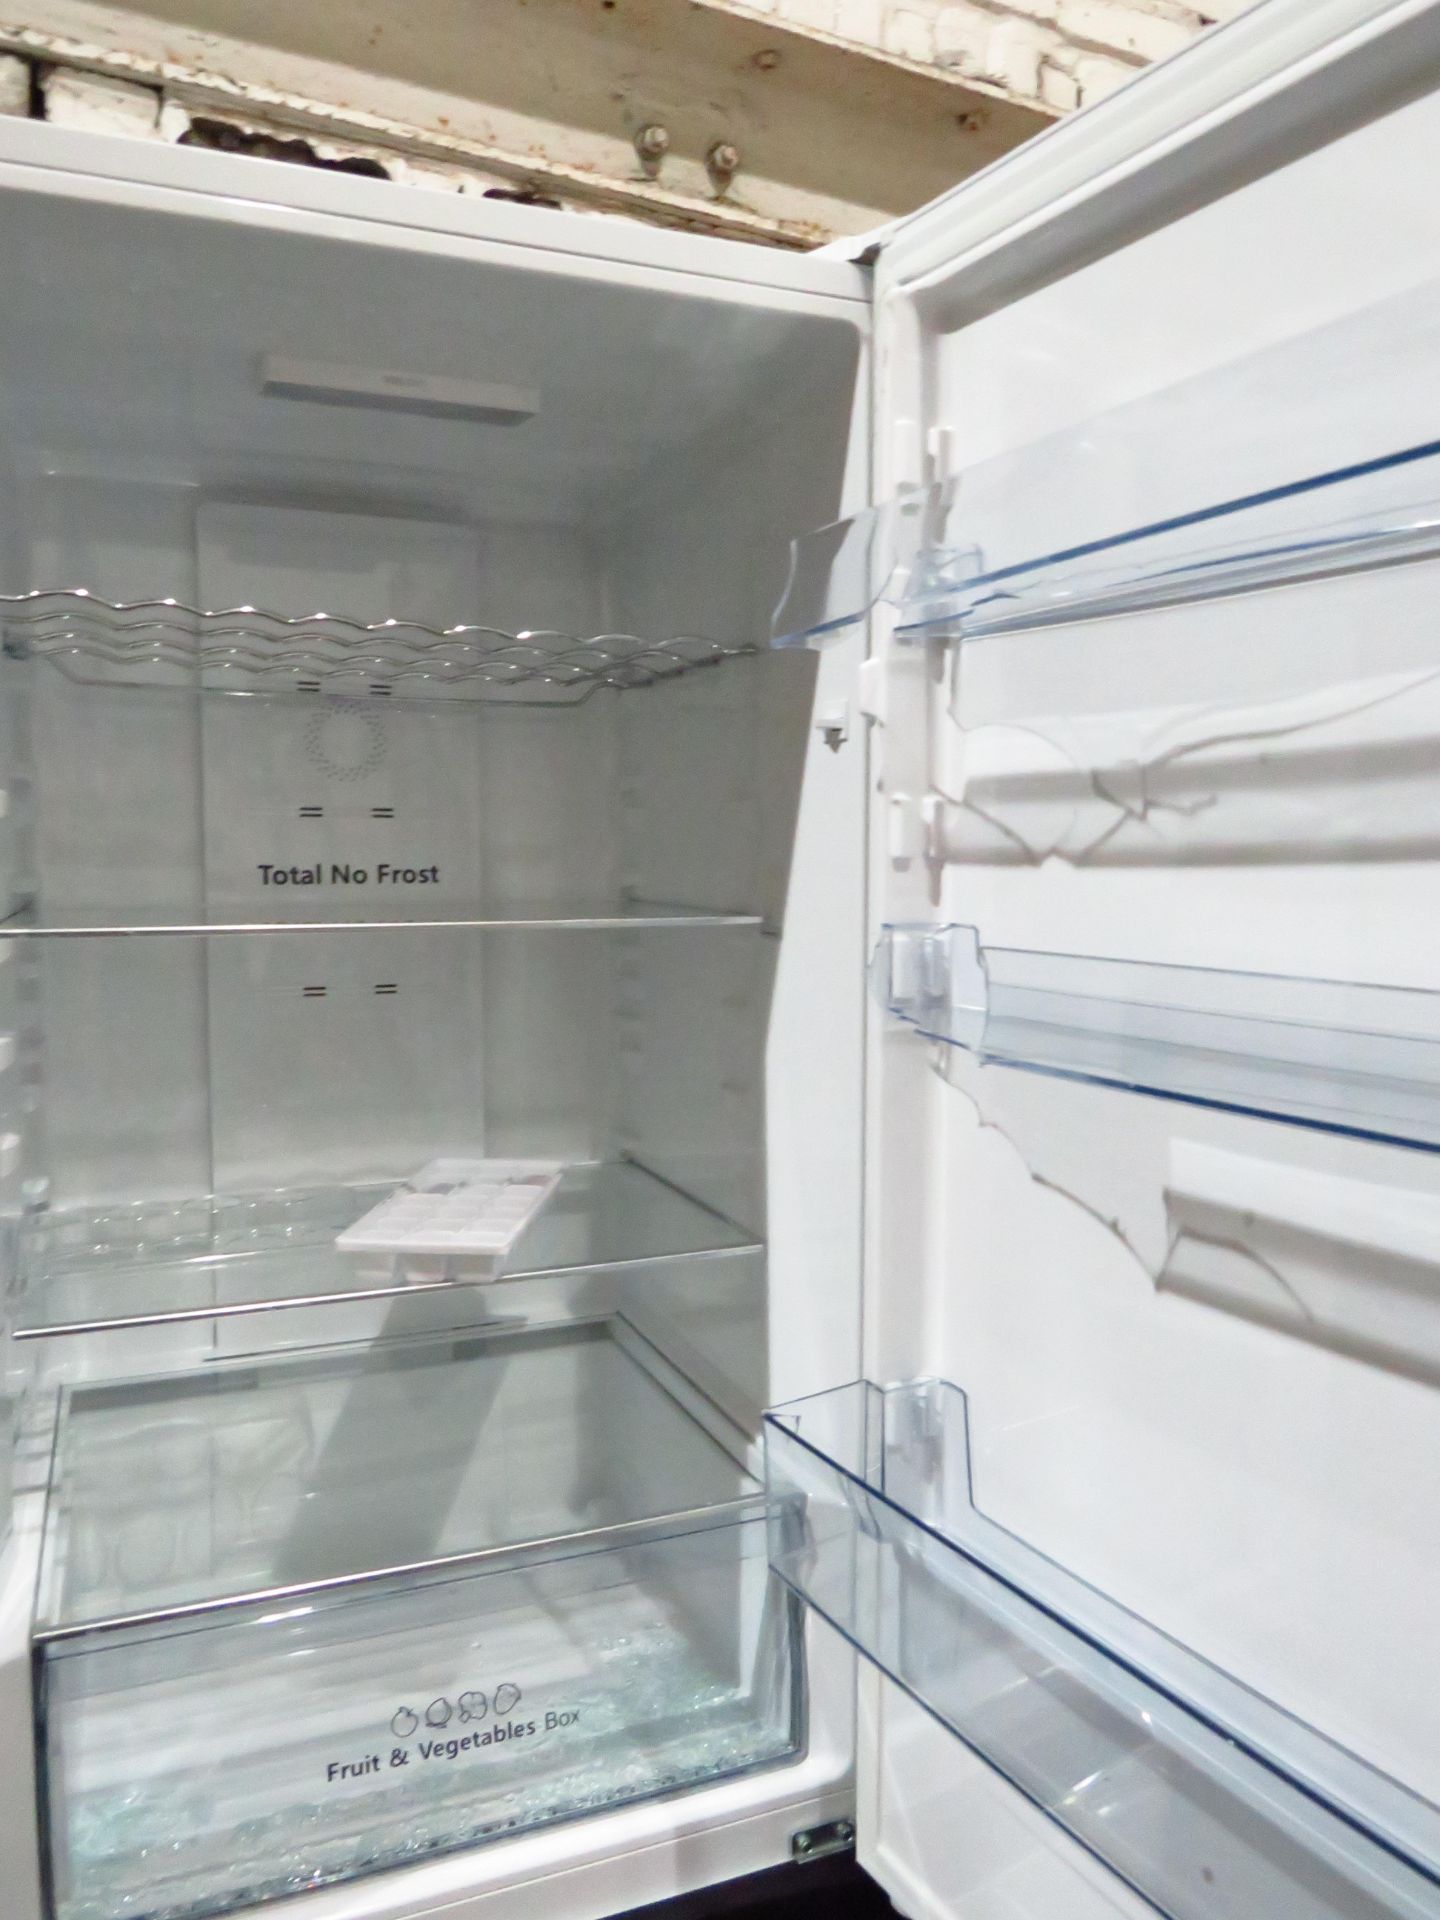 Hisense 60/40 fridge freezer, powers on but the fridge door is damged so ujnabkle to check it any - Image 2 of 2